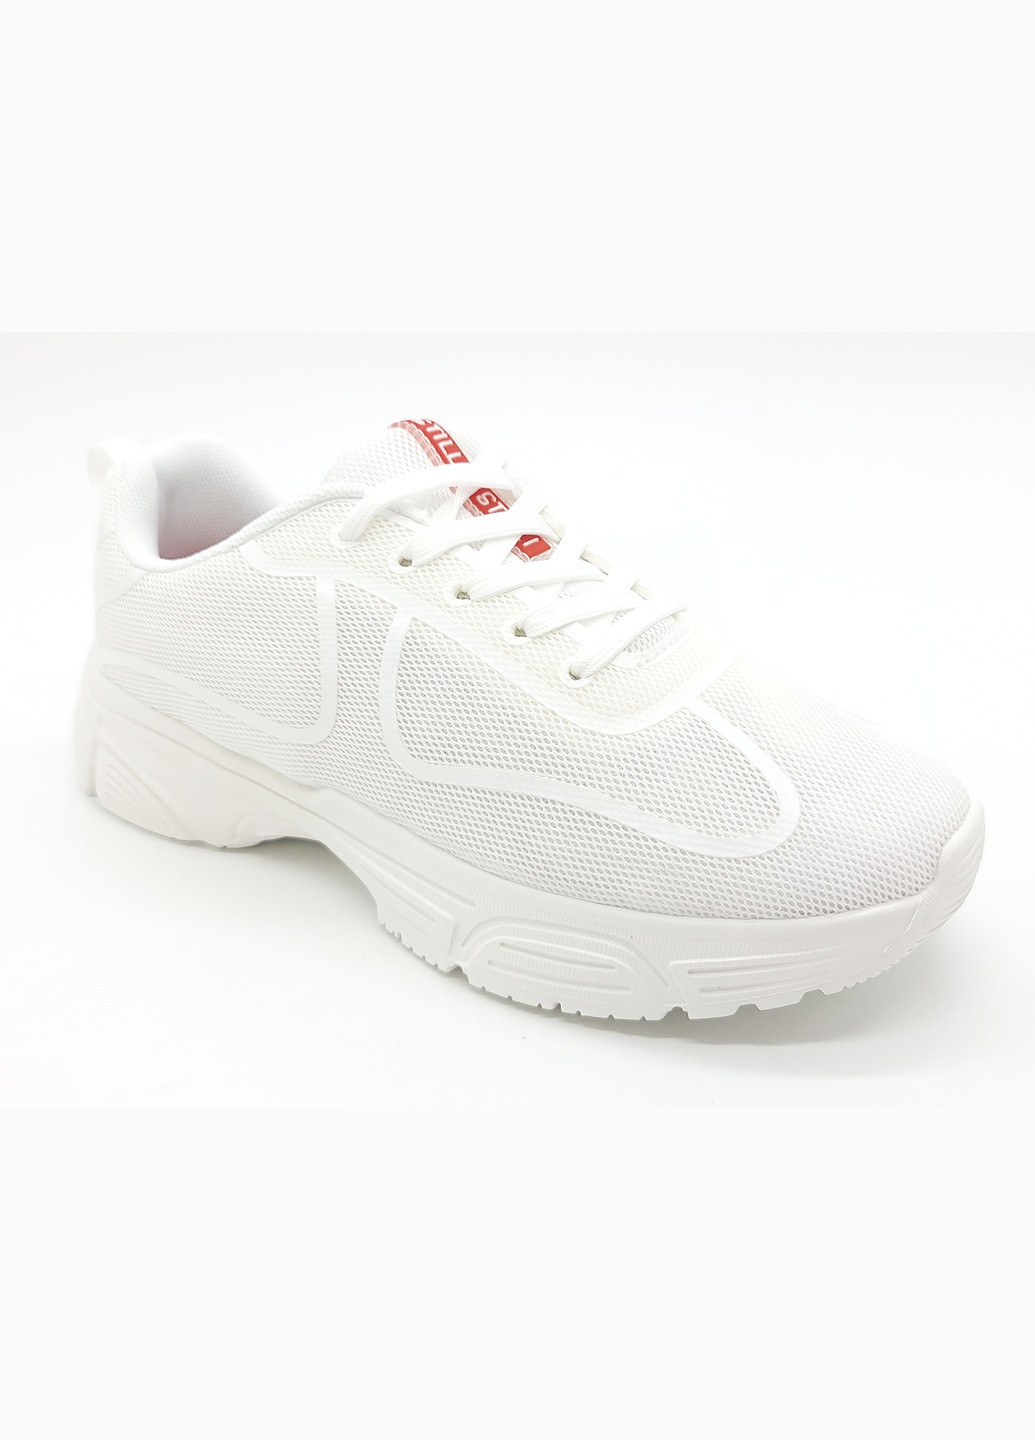 Білі всесезонні жіночі кросівки білі текстиль sl-16-6 24 см (р) Stilli